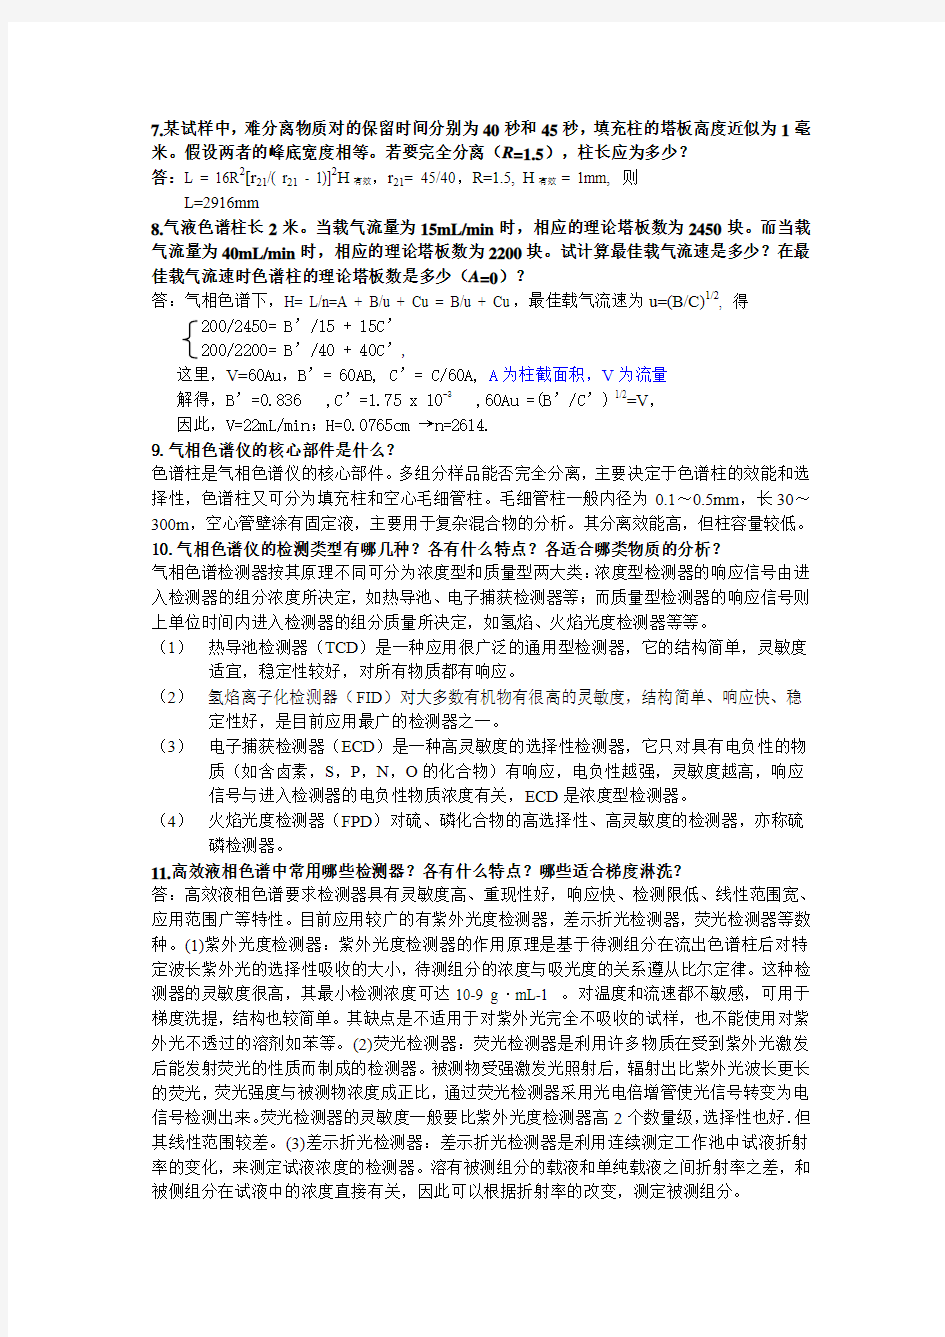 仪器分析第二版(刘志广)部分课后答案